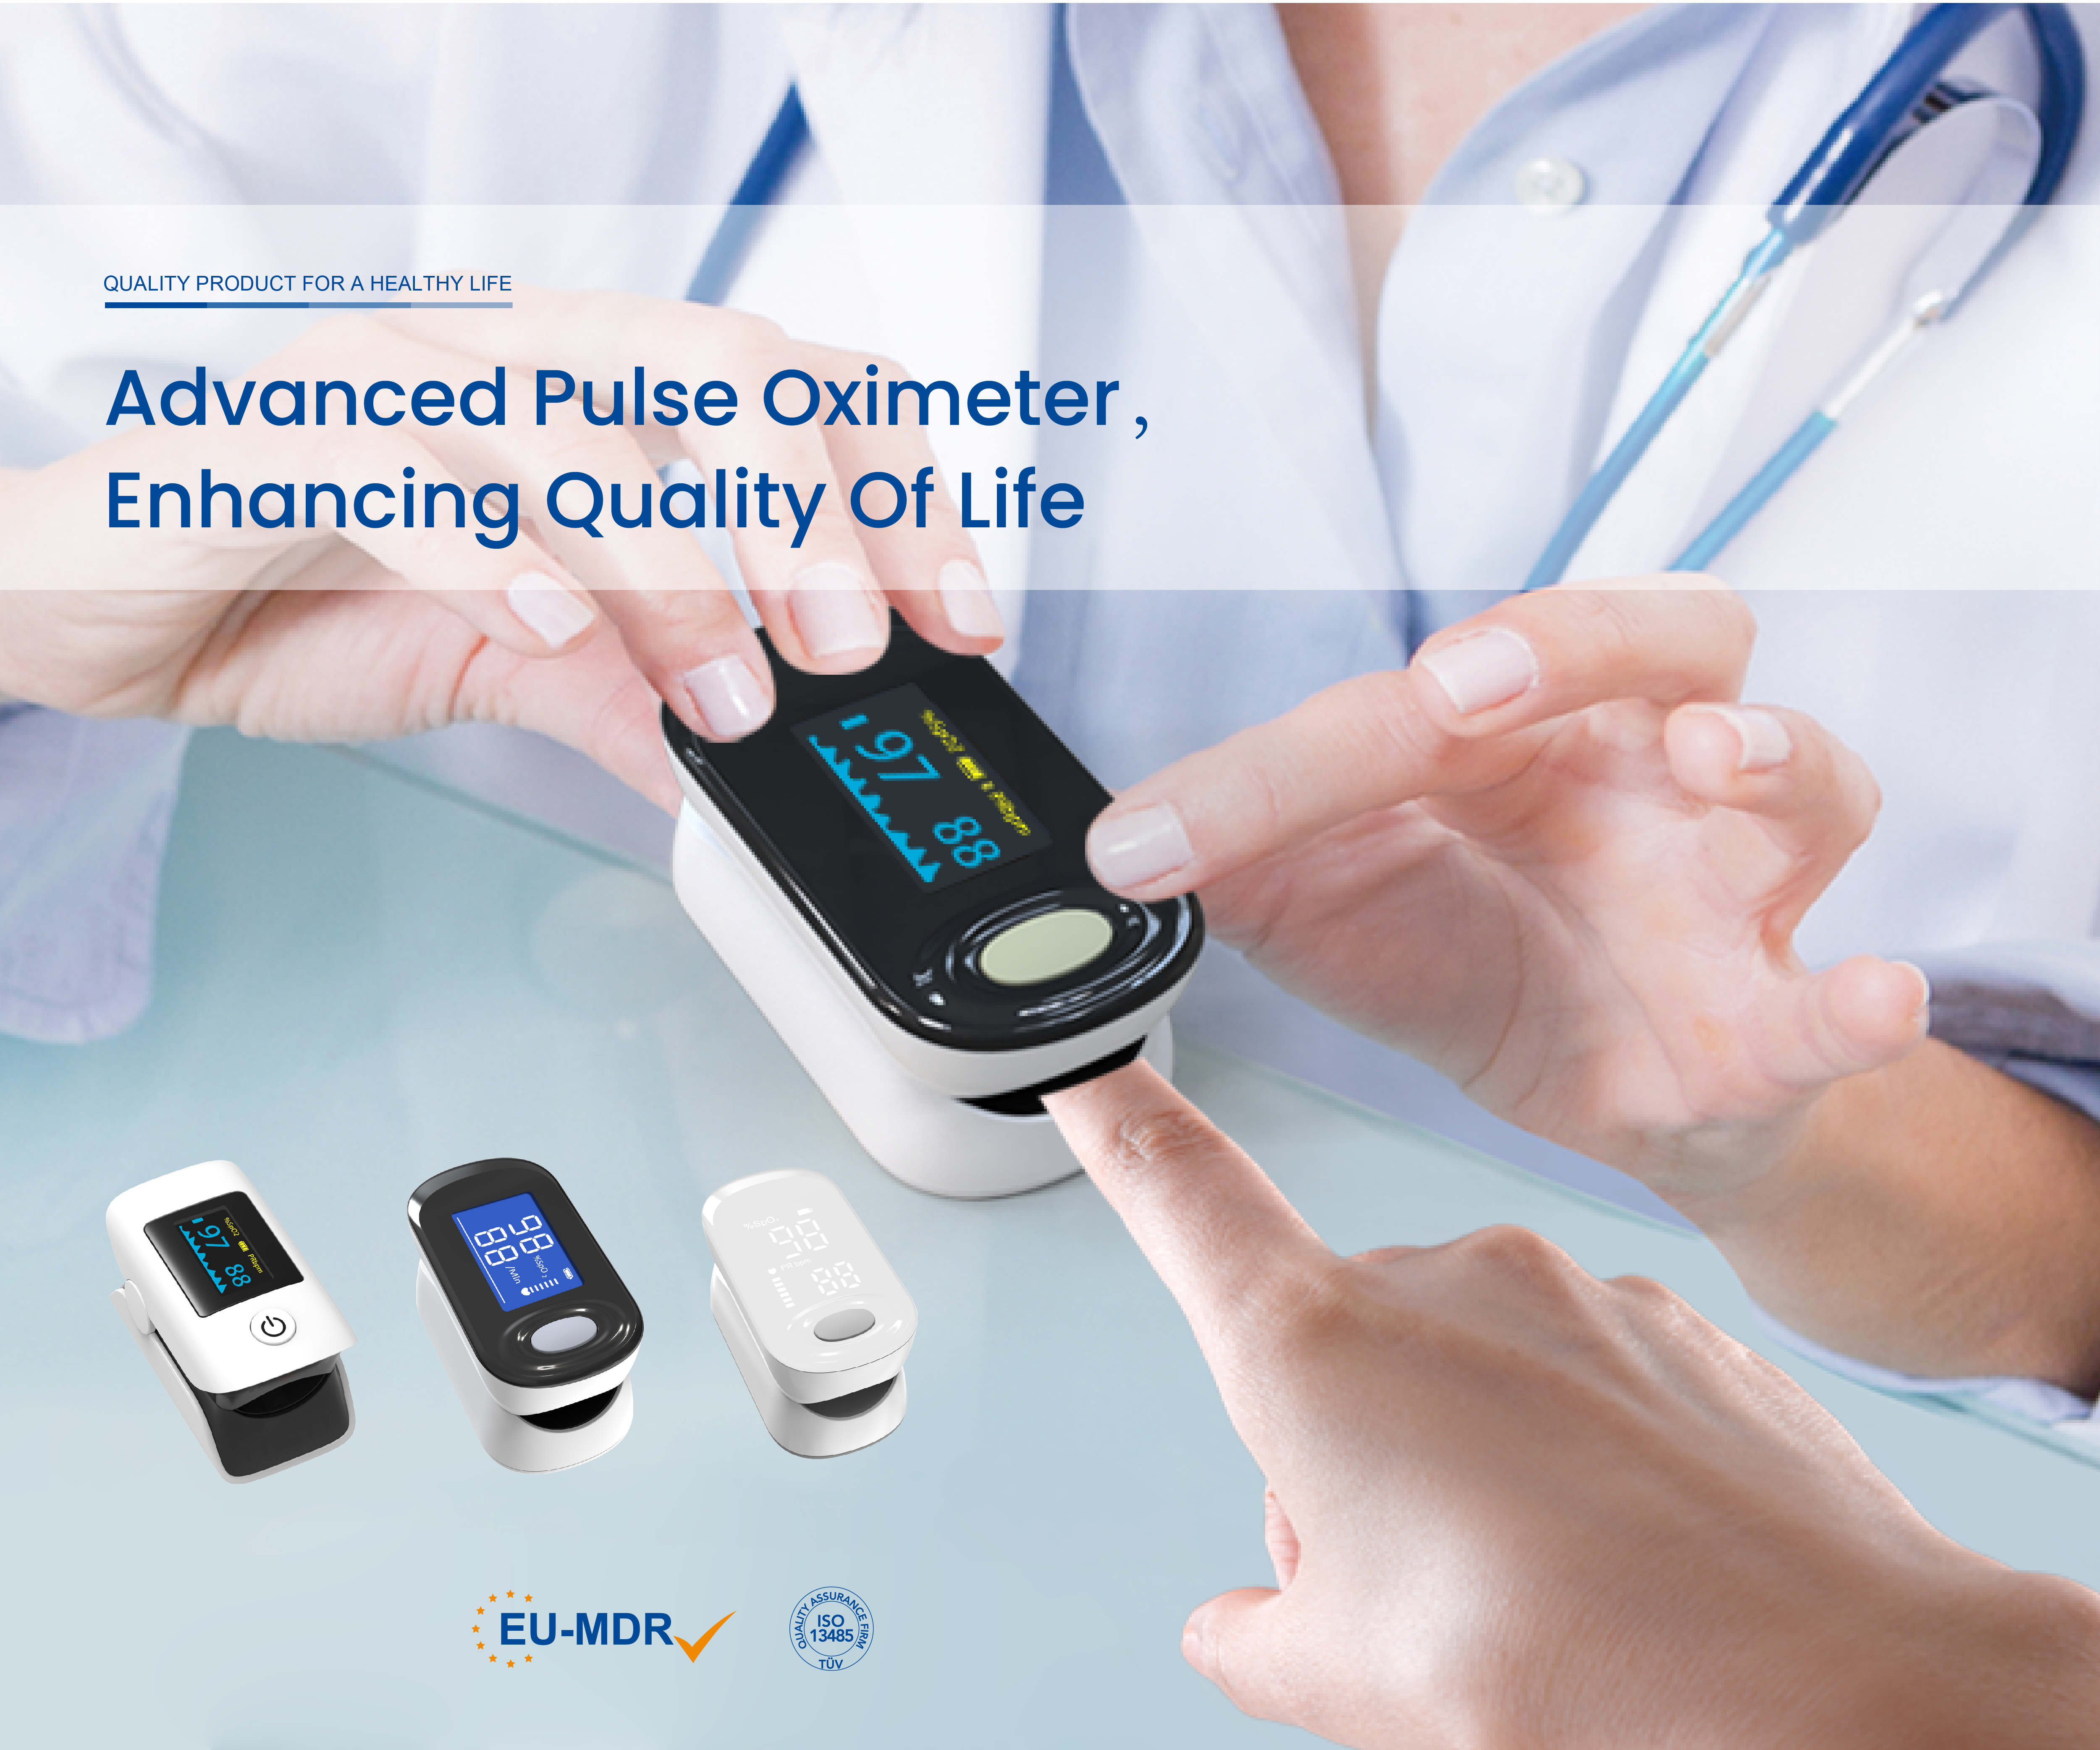 Congratulazioni a Joytech Healthcare per aver ottenuto la certificazione CE MDR per i pulsossimetri da dito!